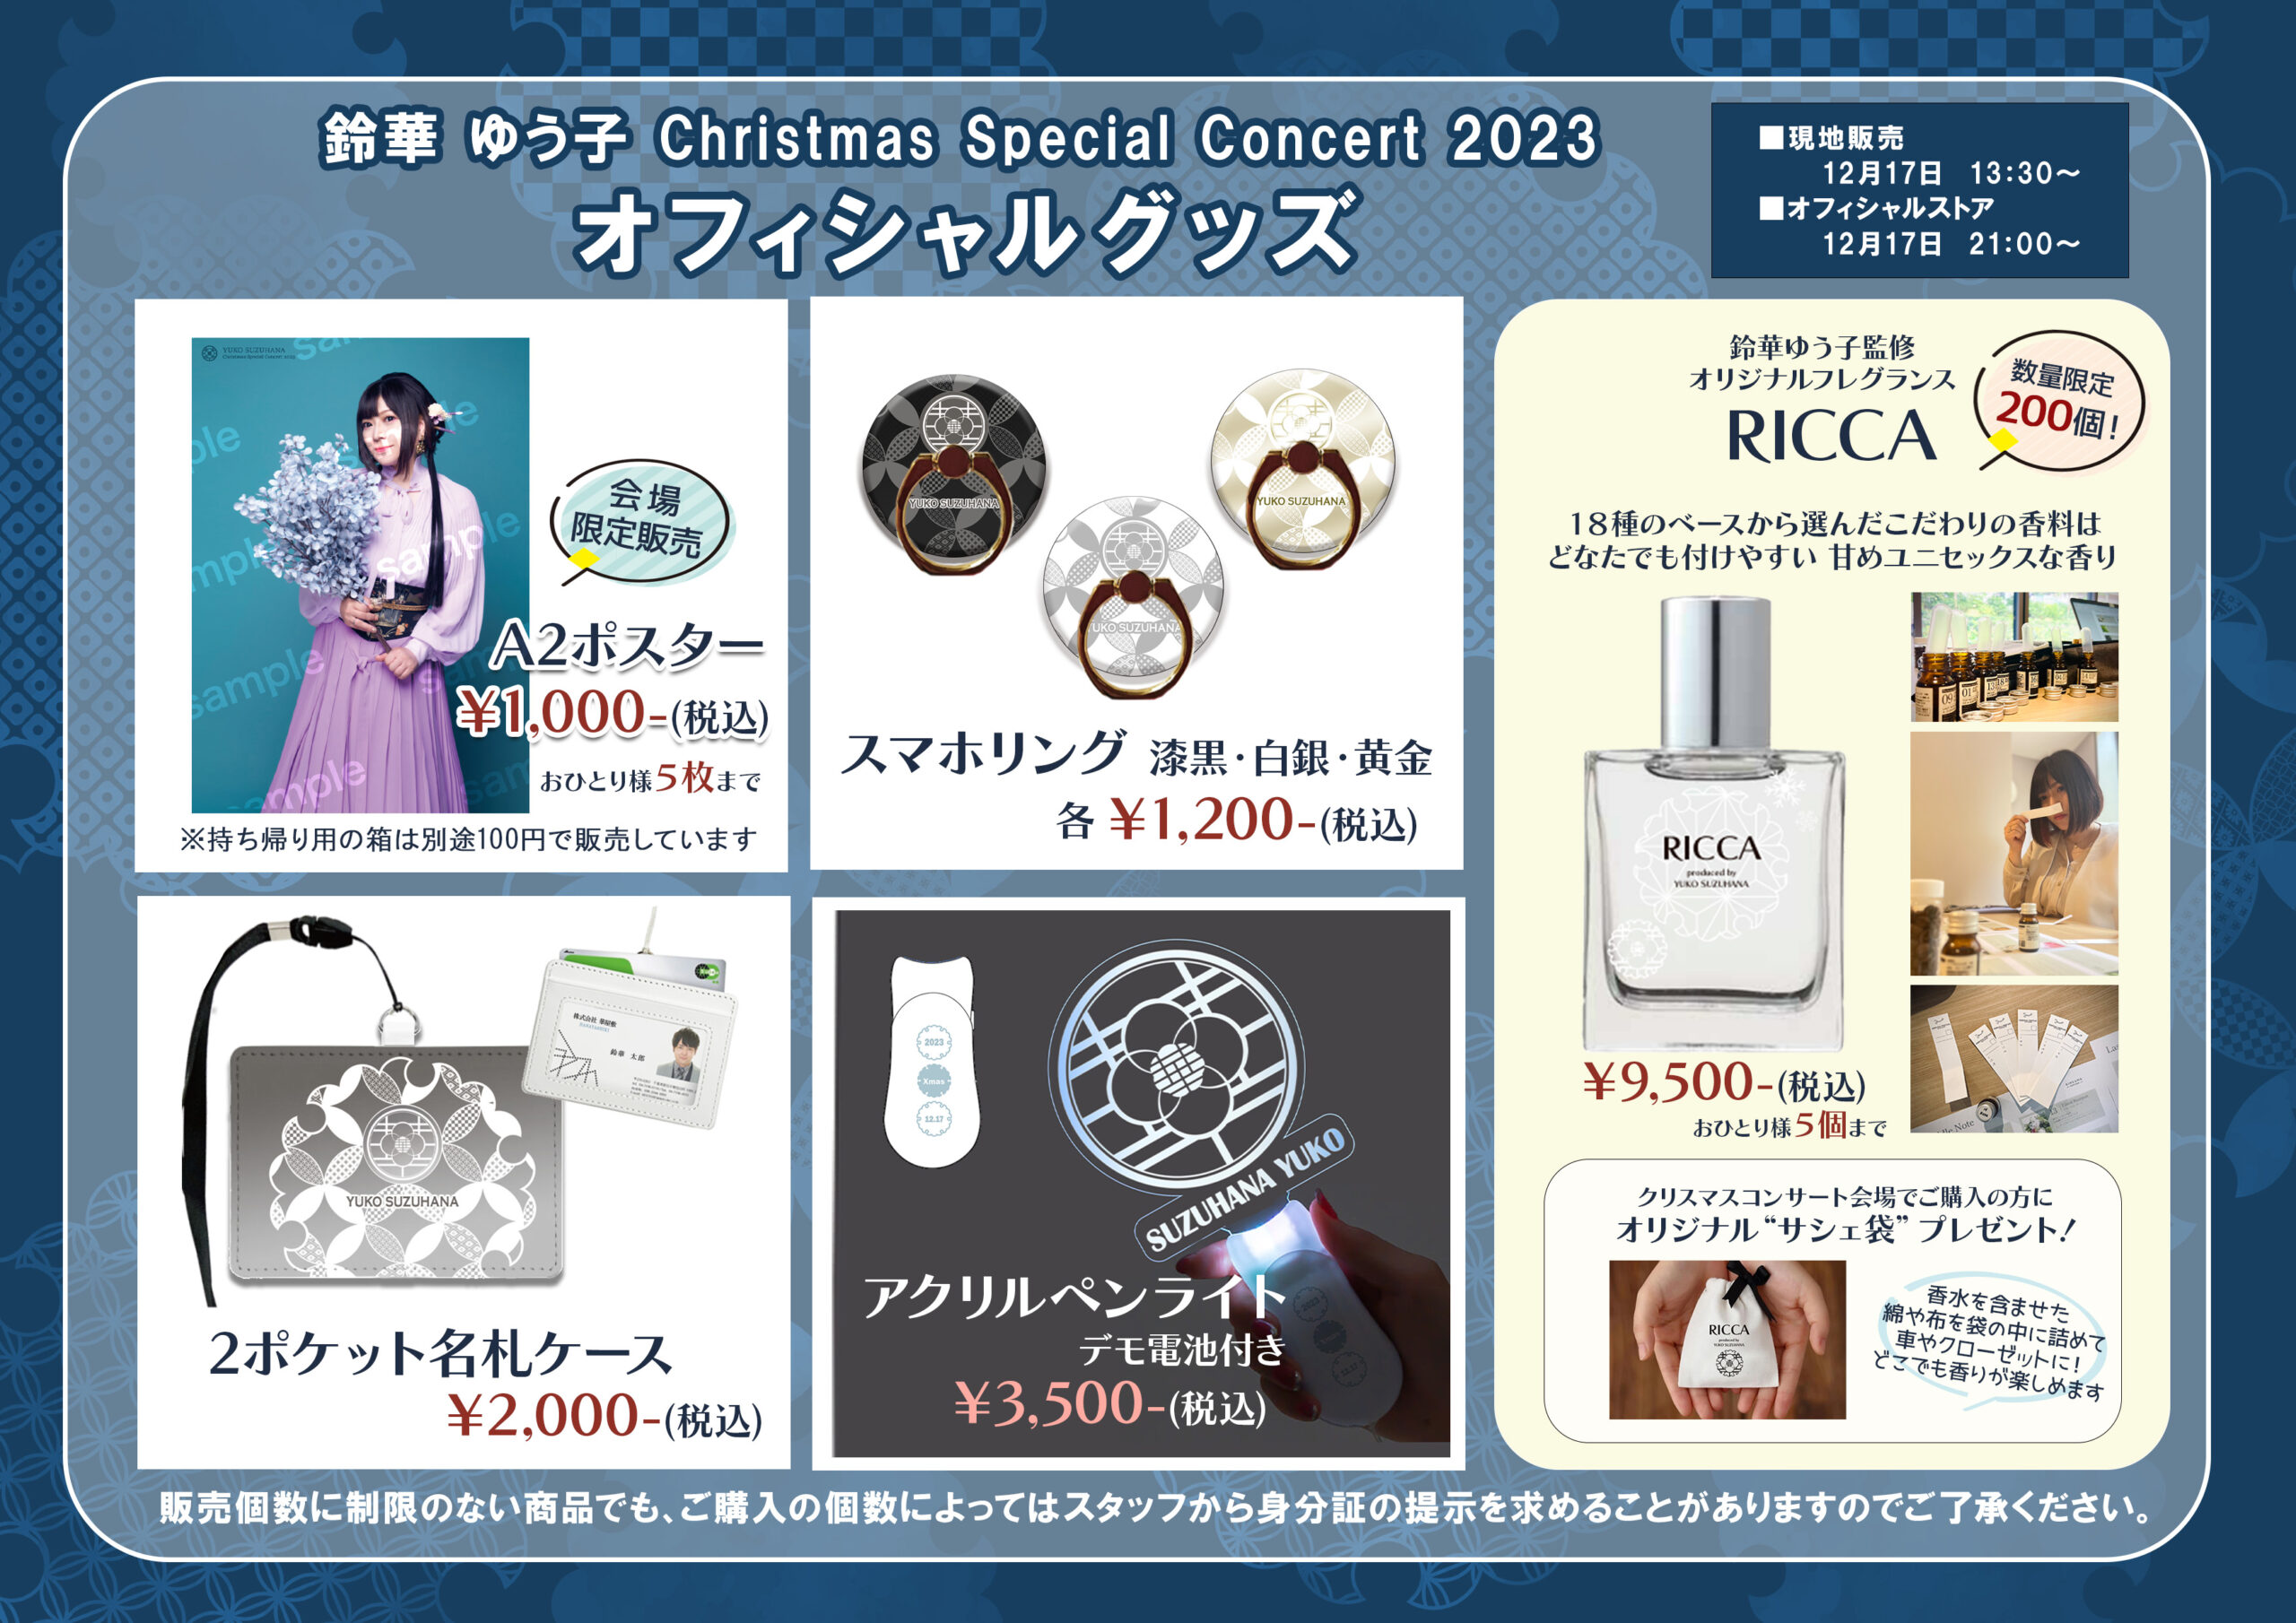 鈴華ゆう子 Christmas Special Concert 2023 グッズラインナップ発表 